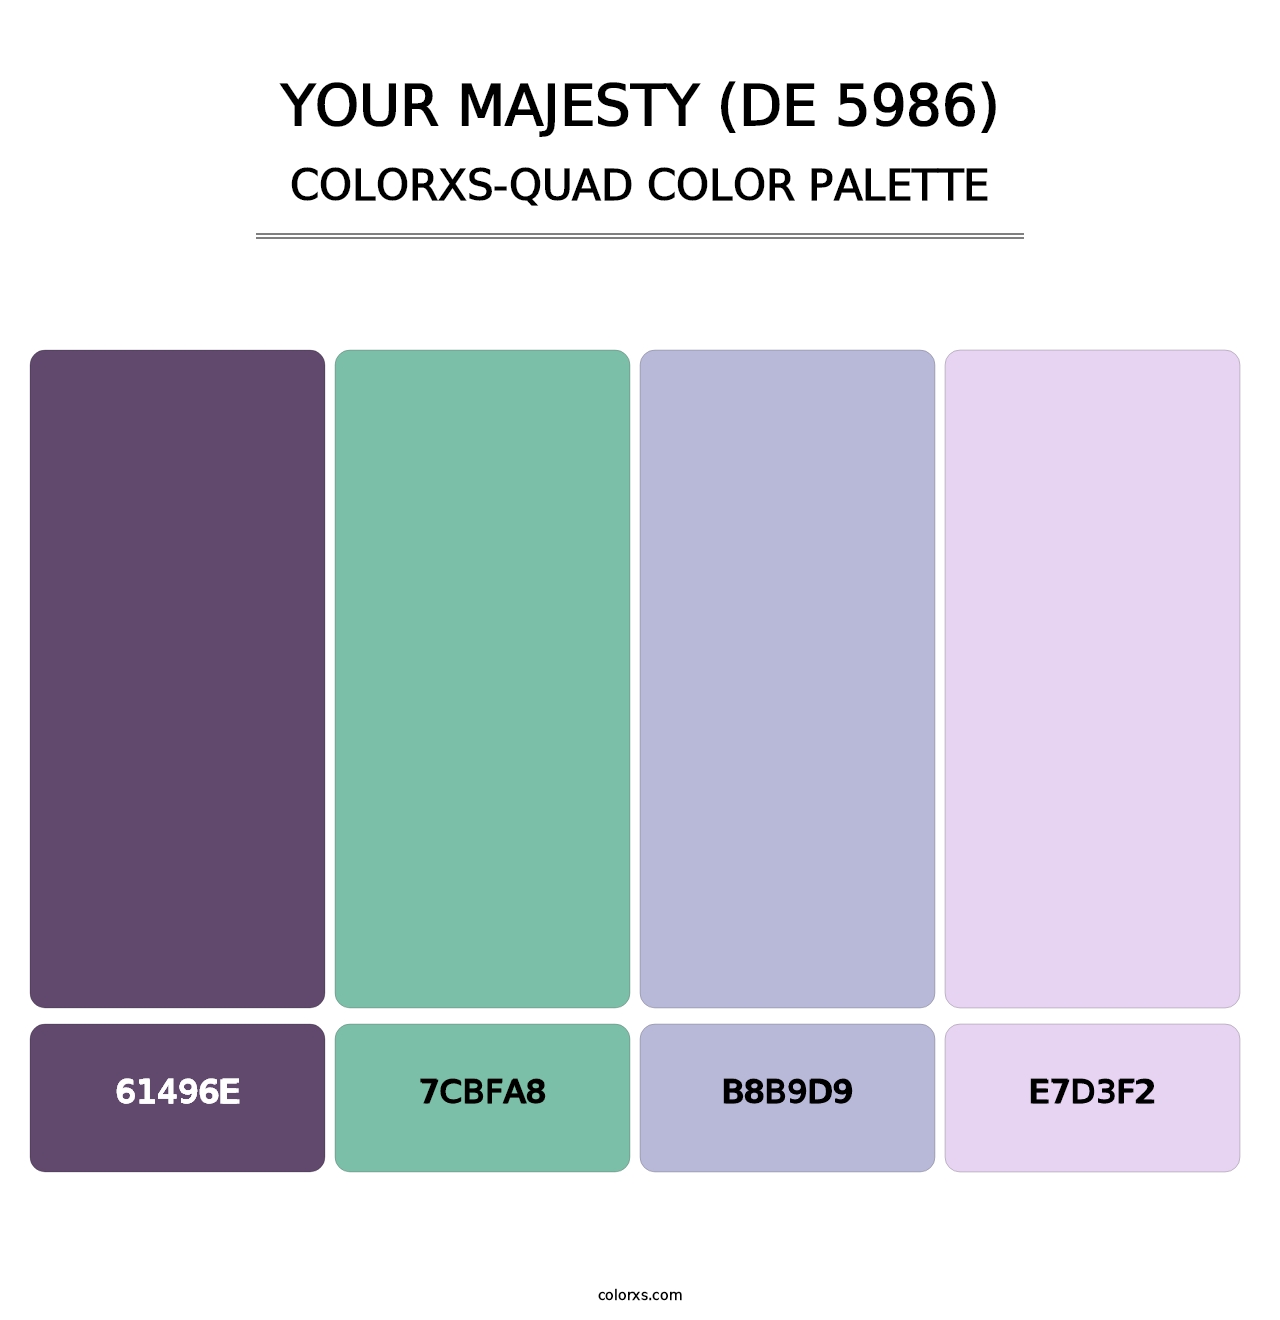 Your Majesty (DE 5986) - Colorxs Quad Palette